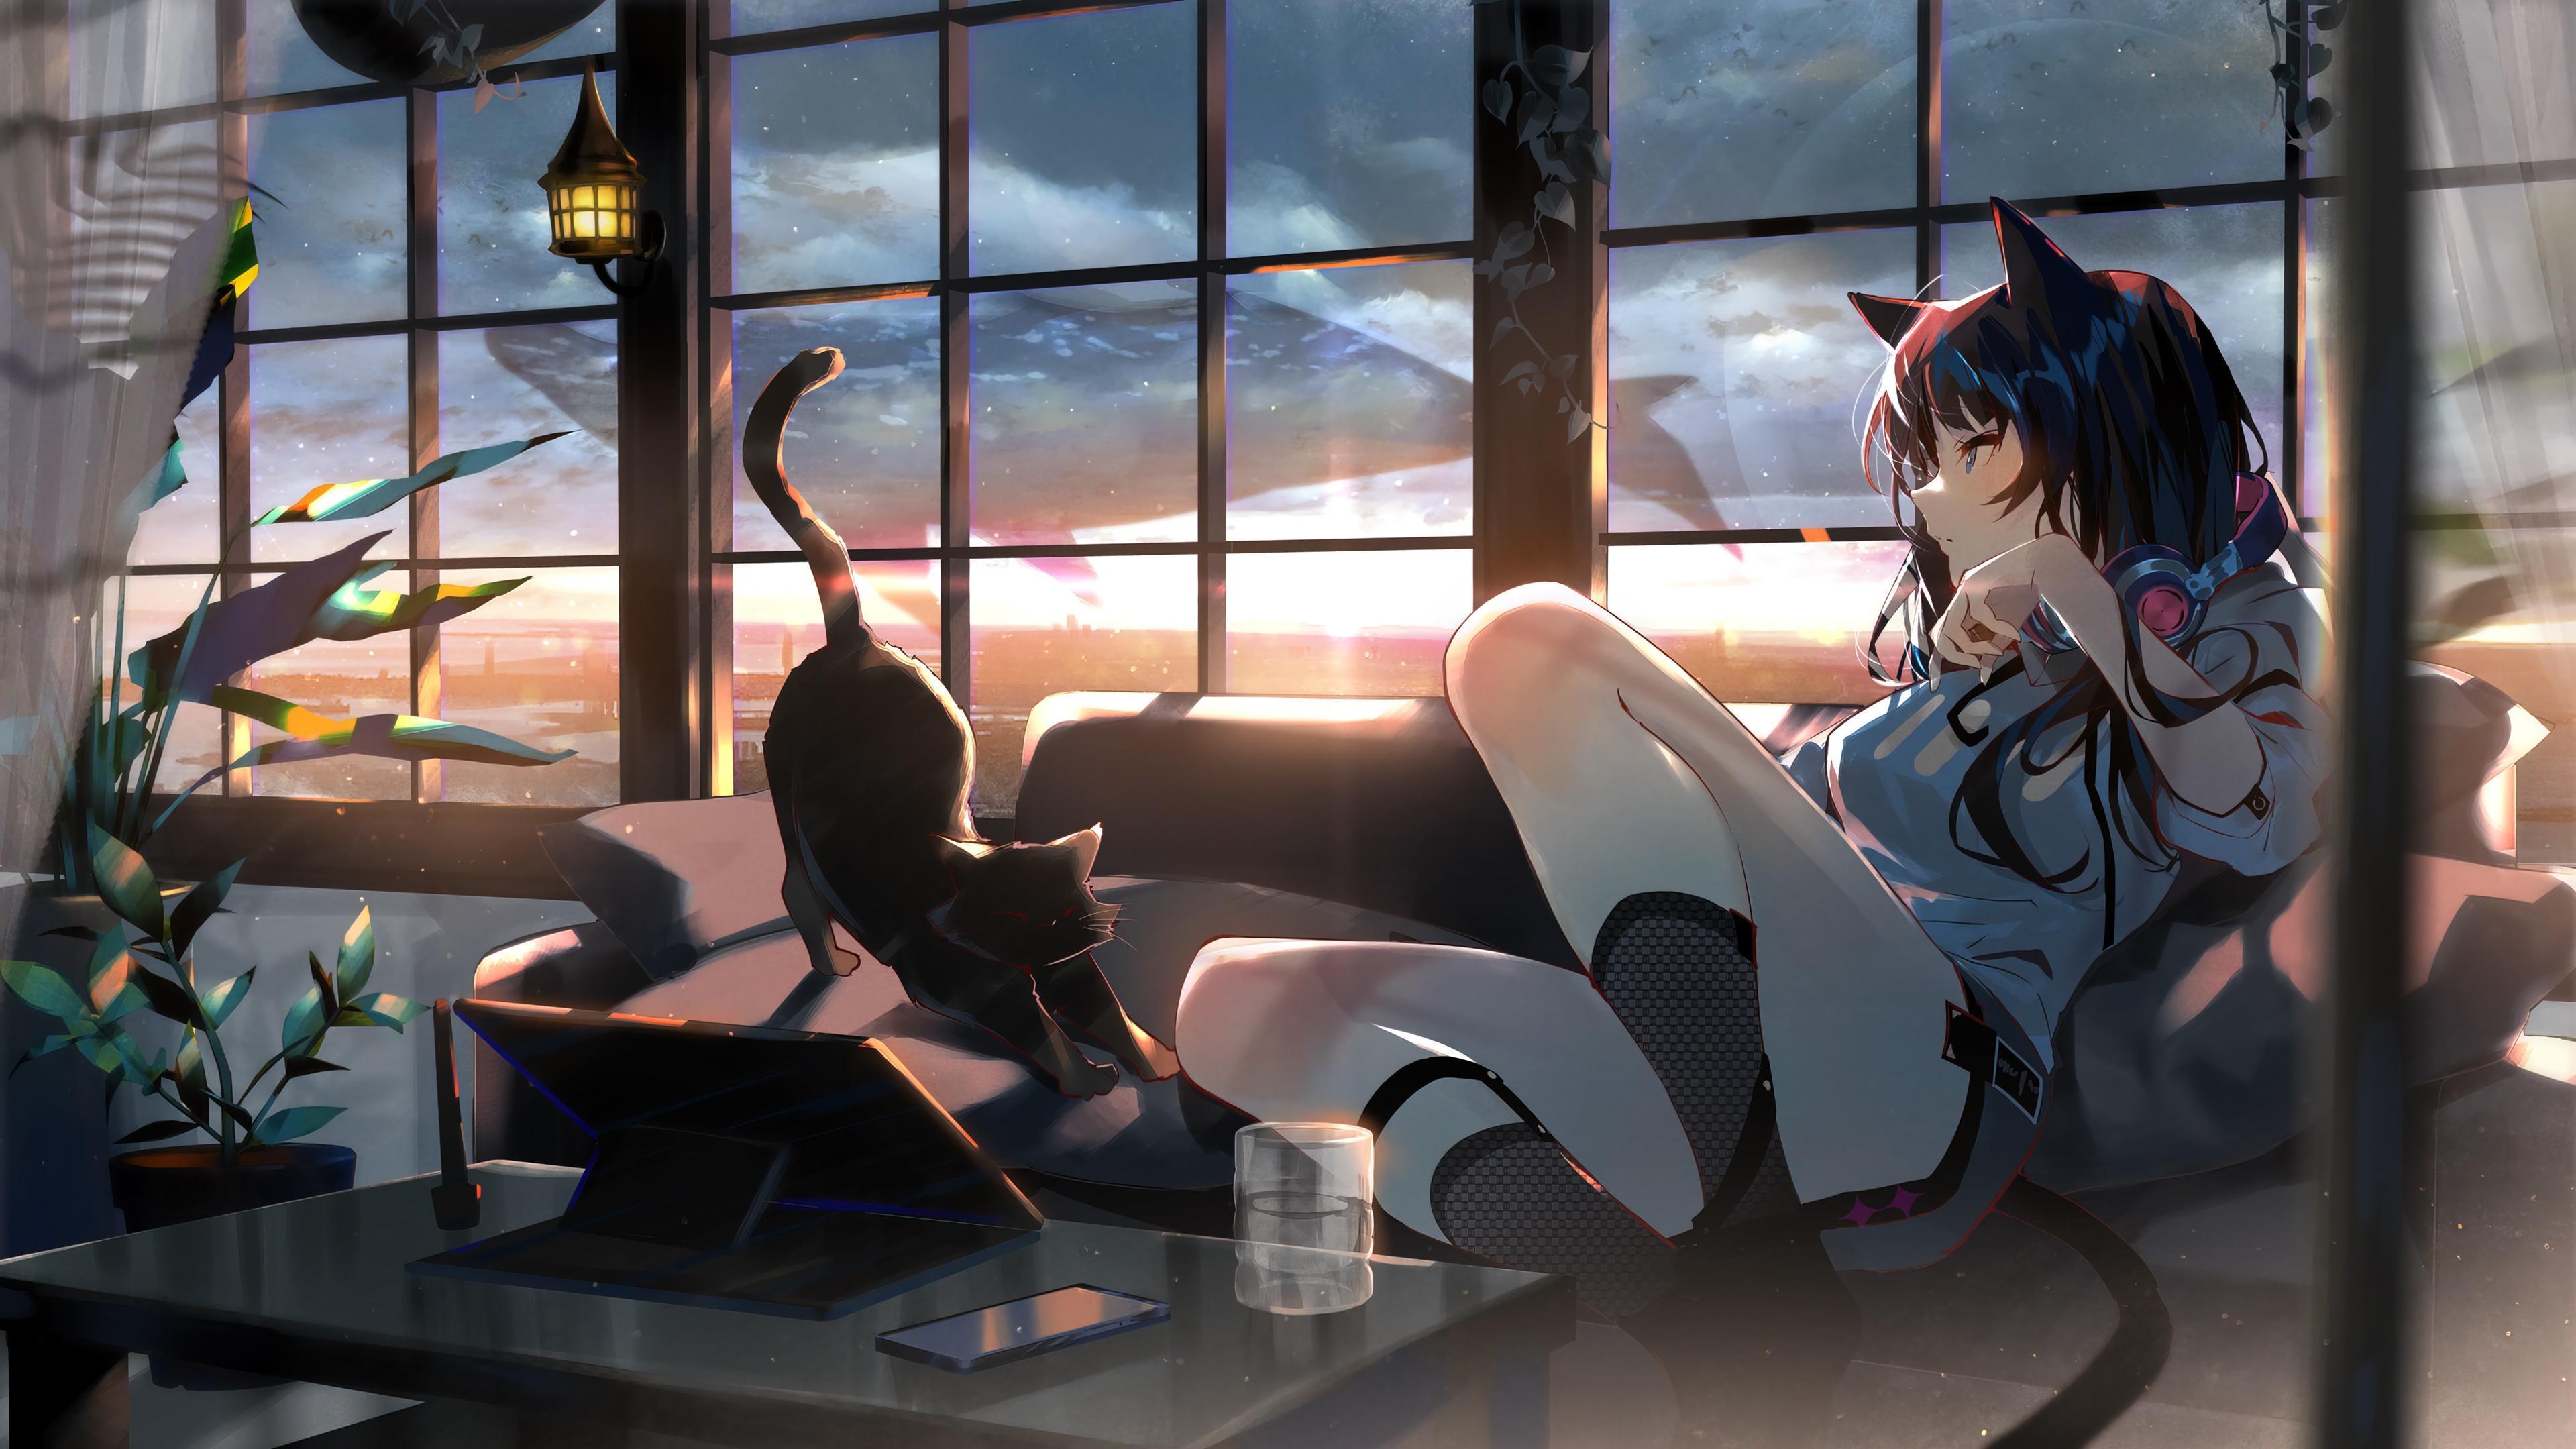 HD wallpaper, Anime, Pc, 4K, Girl, Cat, Sunset